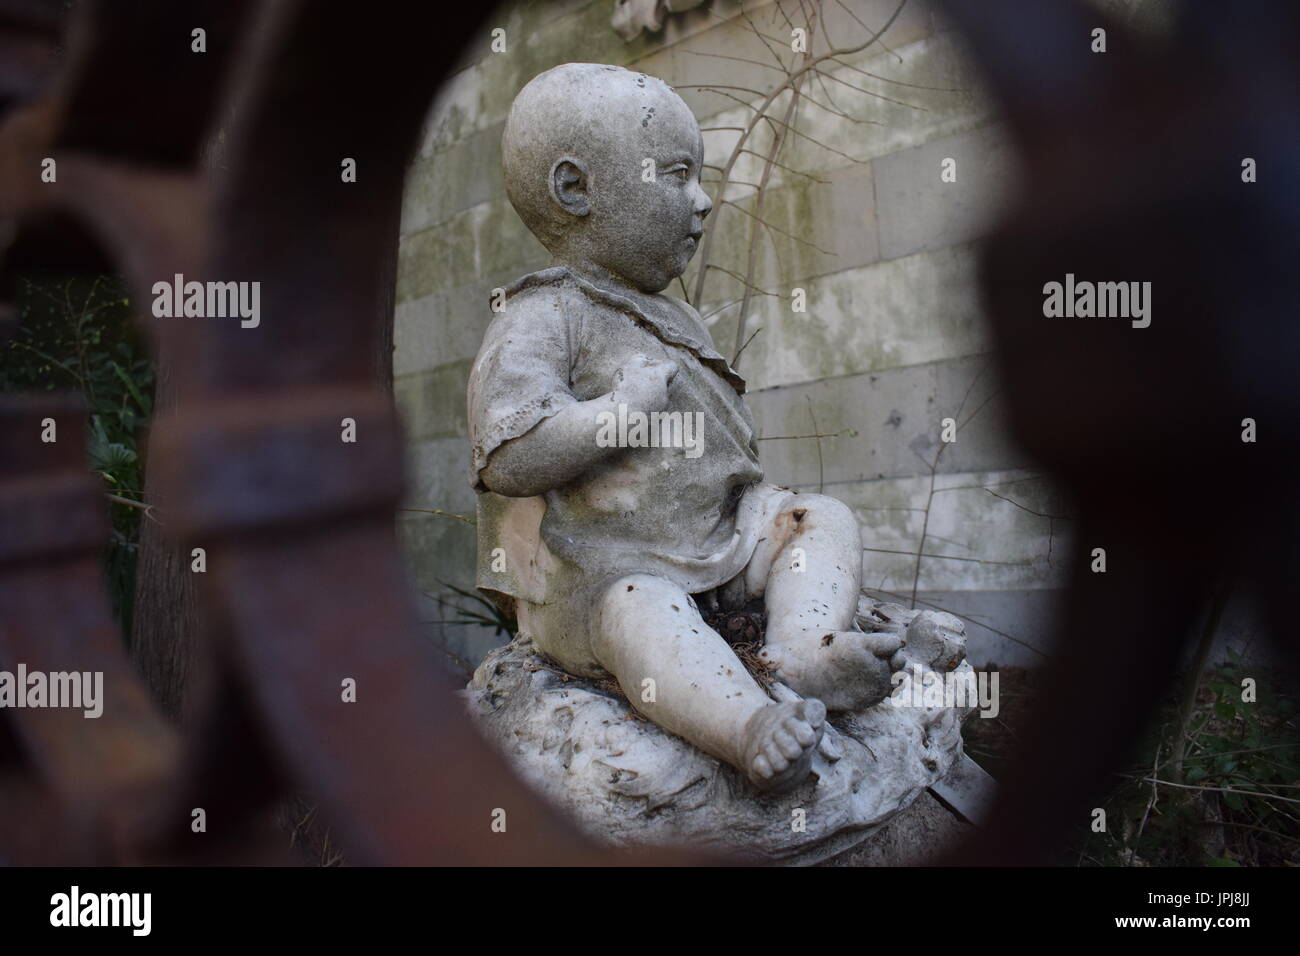 Statue de bébé dans le cimetière monumental de Staglieno, Gênes, Italie Banque D'Images